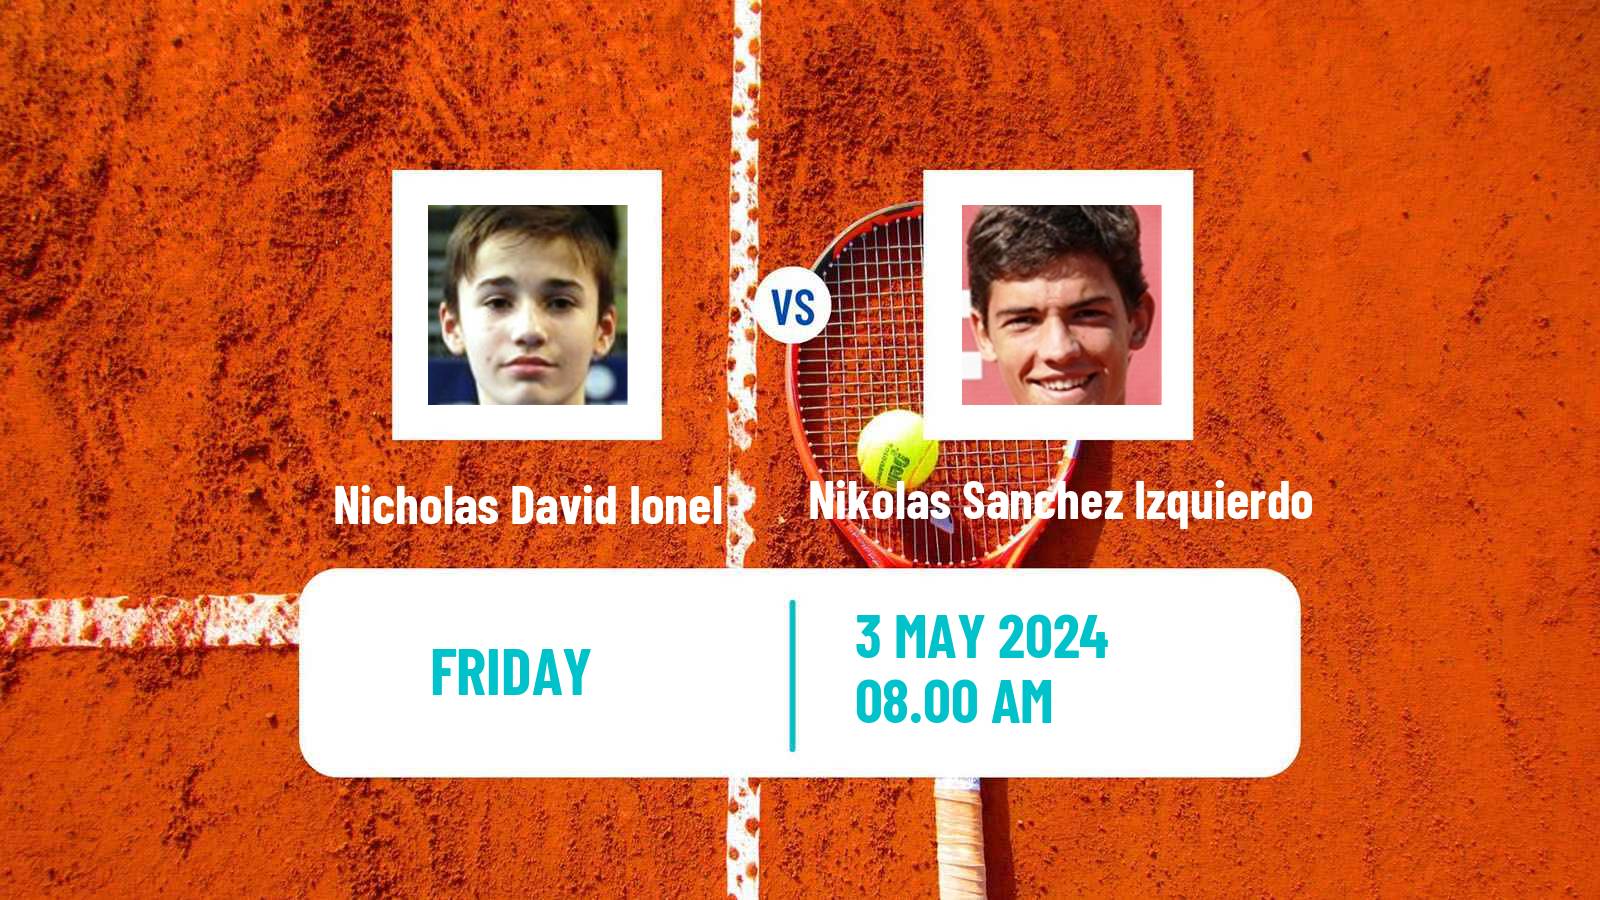 Tennis ITF M25 Sabadell Men Nicholas David Ionel - Nikolas Sanchez Izquierdo